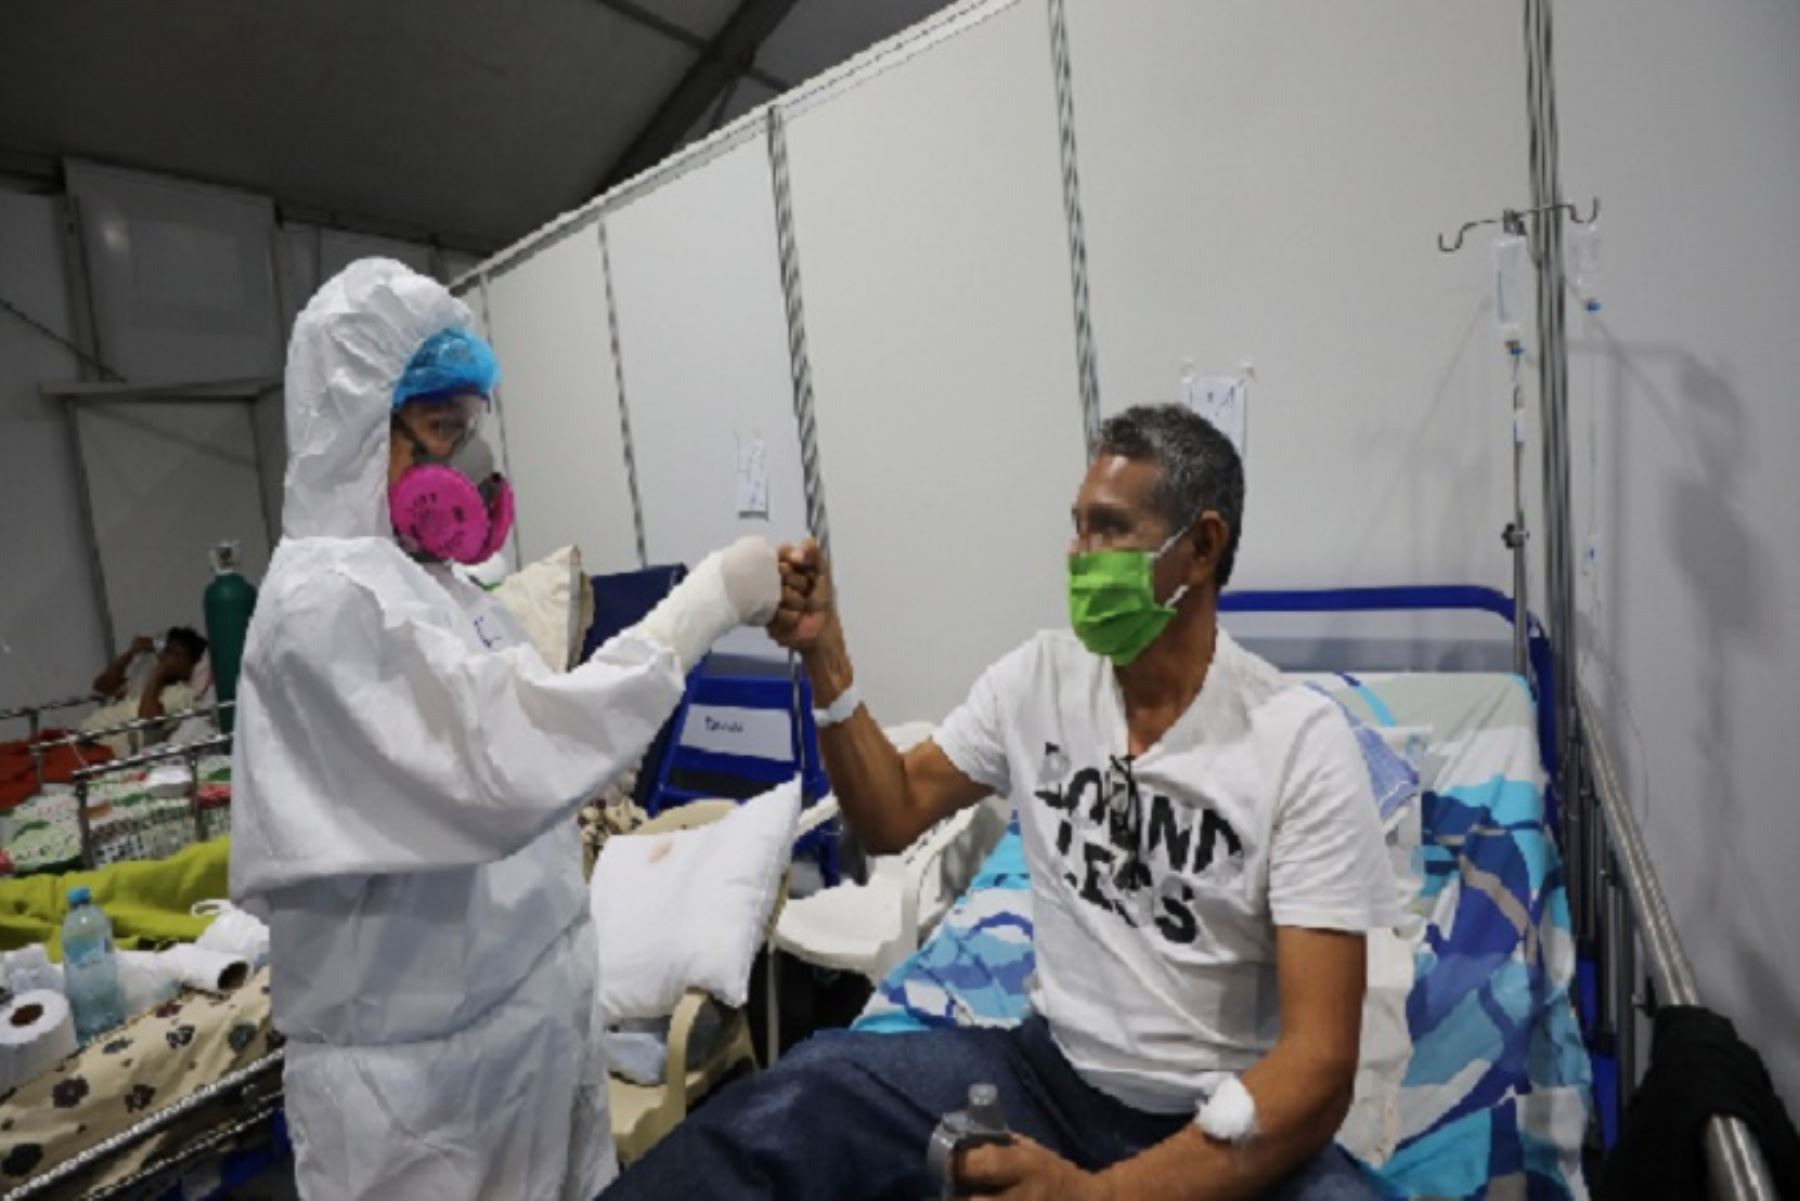 De ser una de las primeras regiones más castigadas por la pandemia del nuevo coronavirus, Loreto ha logrado sobreponerse, y desde agosto muestra un claro descenso en la incidencia de contagios, hospitalizaciones y defunciones por esta enfermedad. ANDINA/Difusión